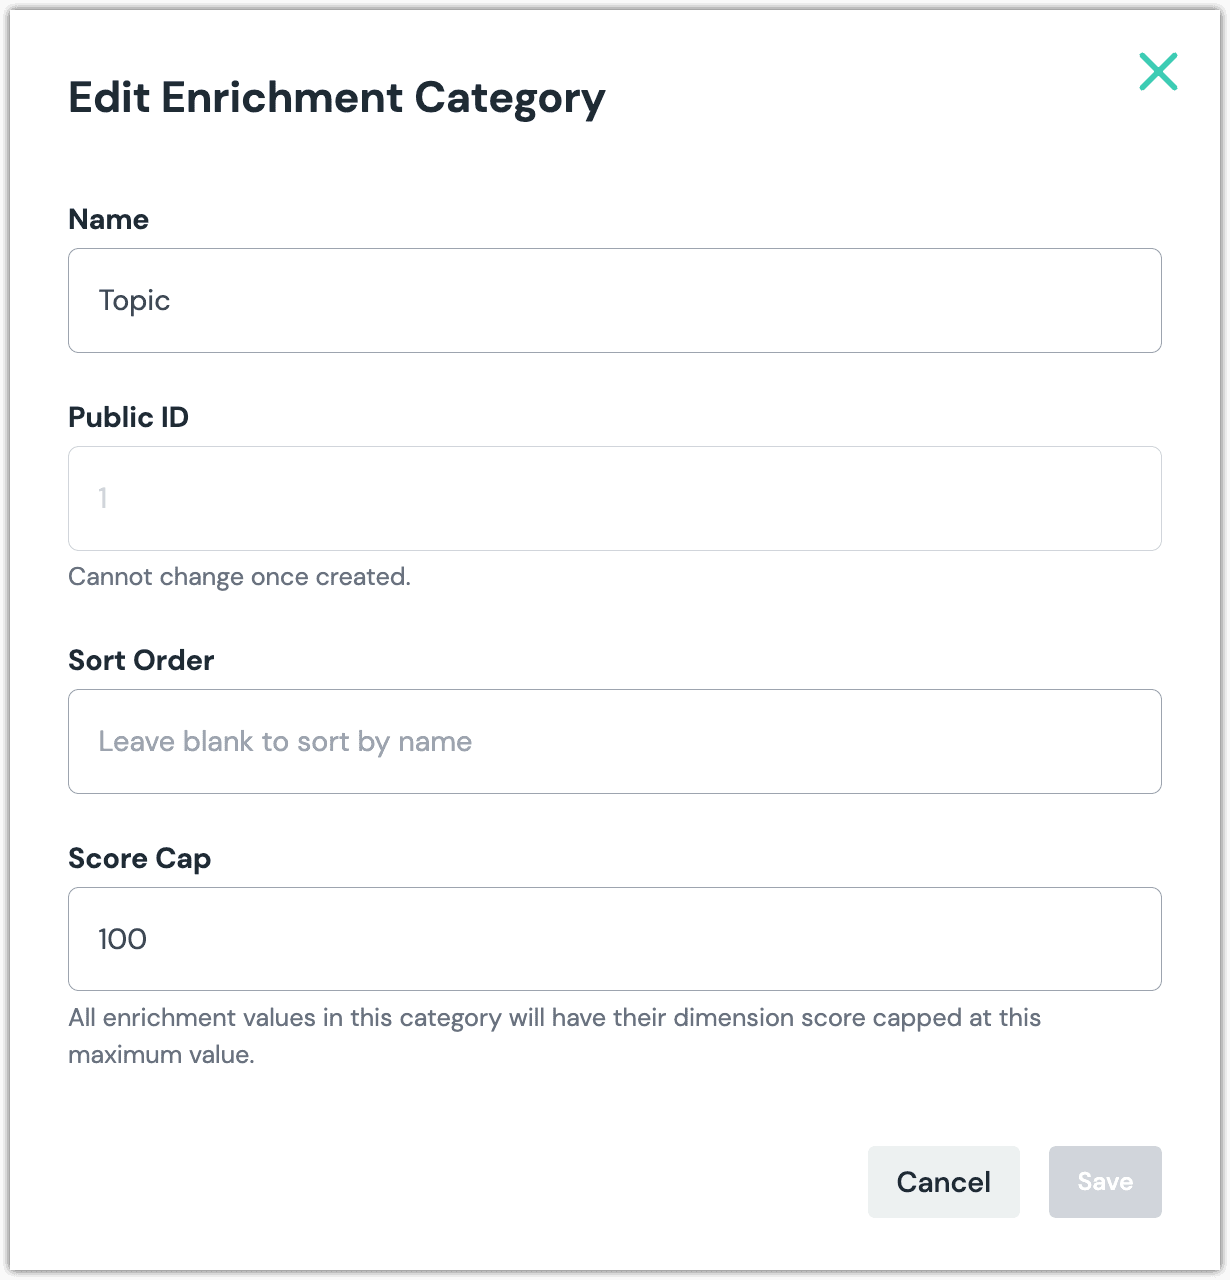 enrichment-category-definition